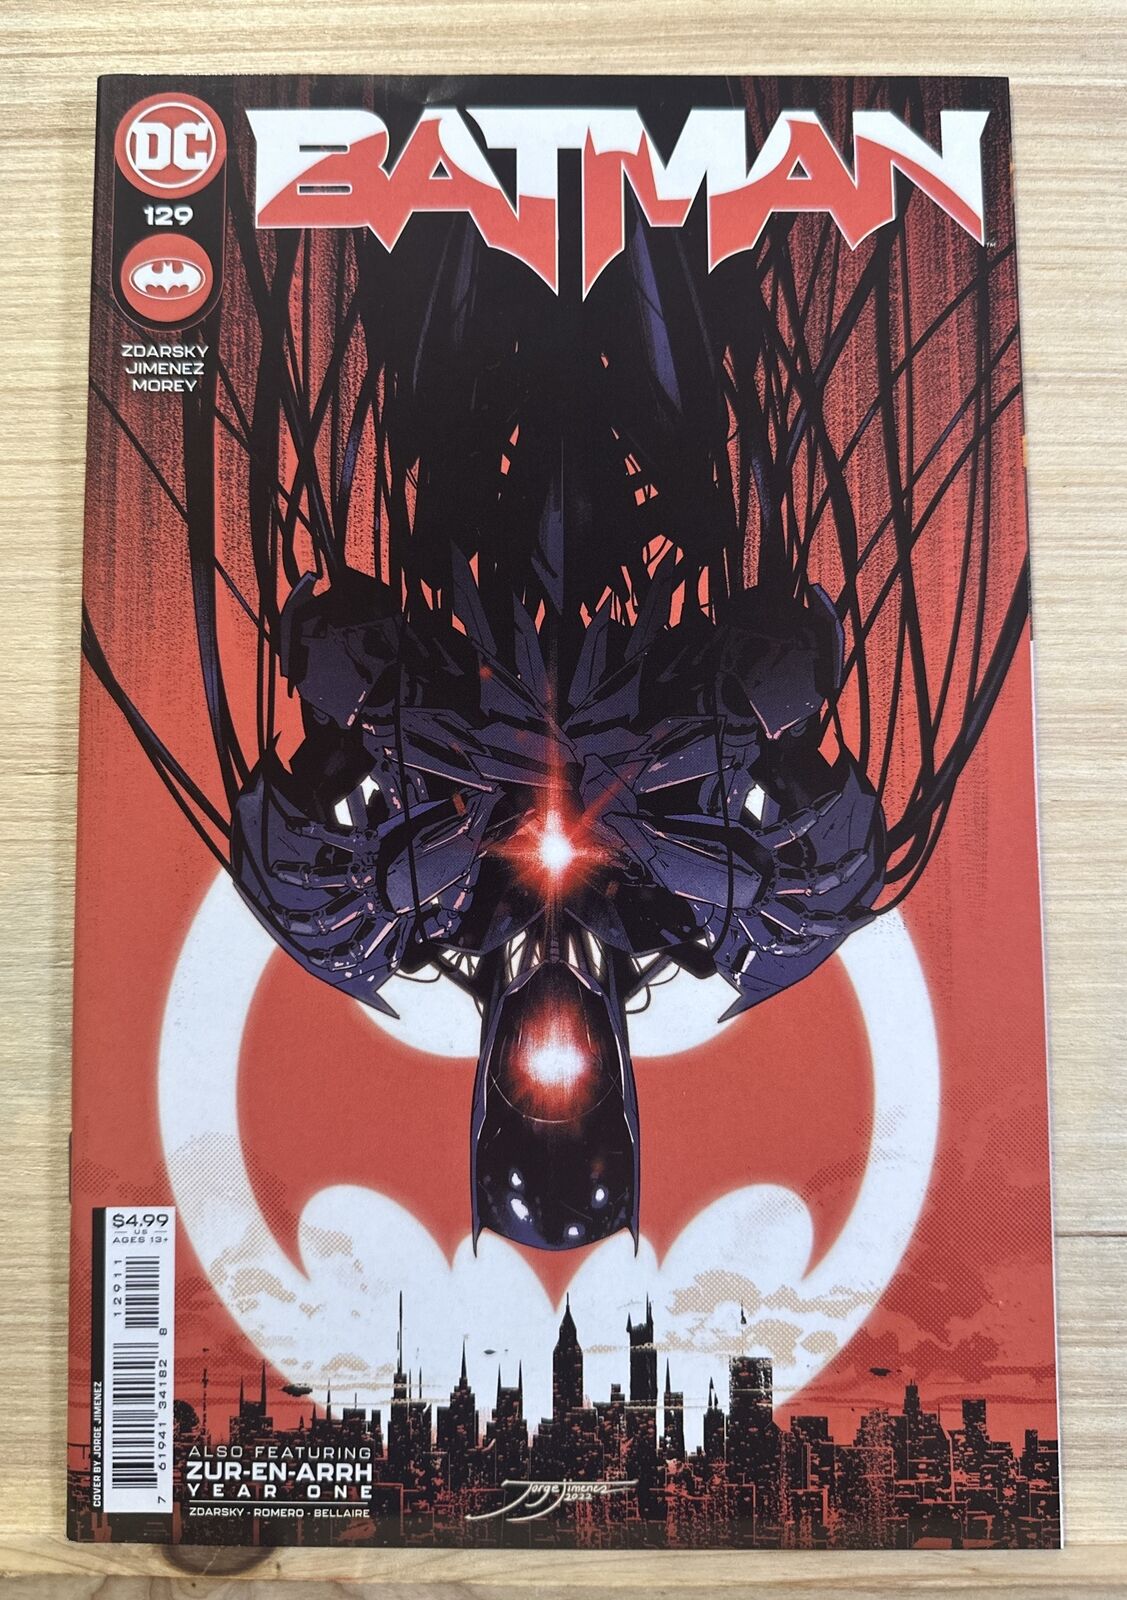 Batman (2022) Issue #129 Also Featuring Zur-En-Arrh Year One